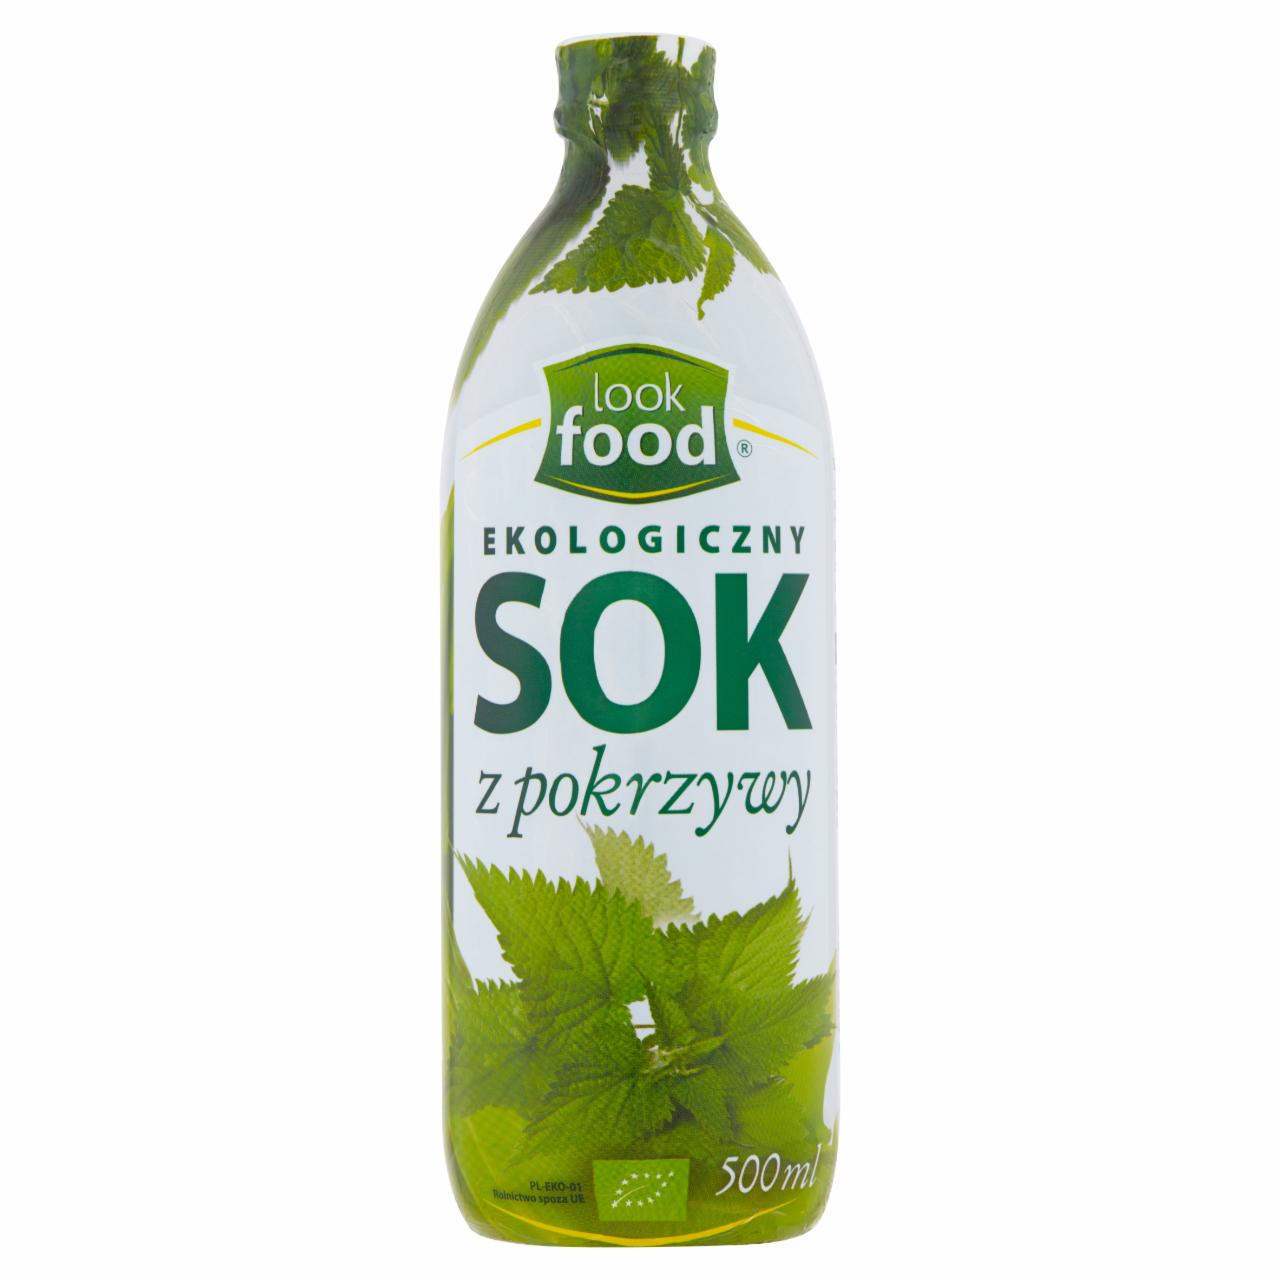 Zdjęcia - Look Food Ekologiczny sok z pokrzywy 500 ml